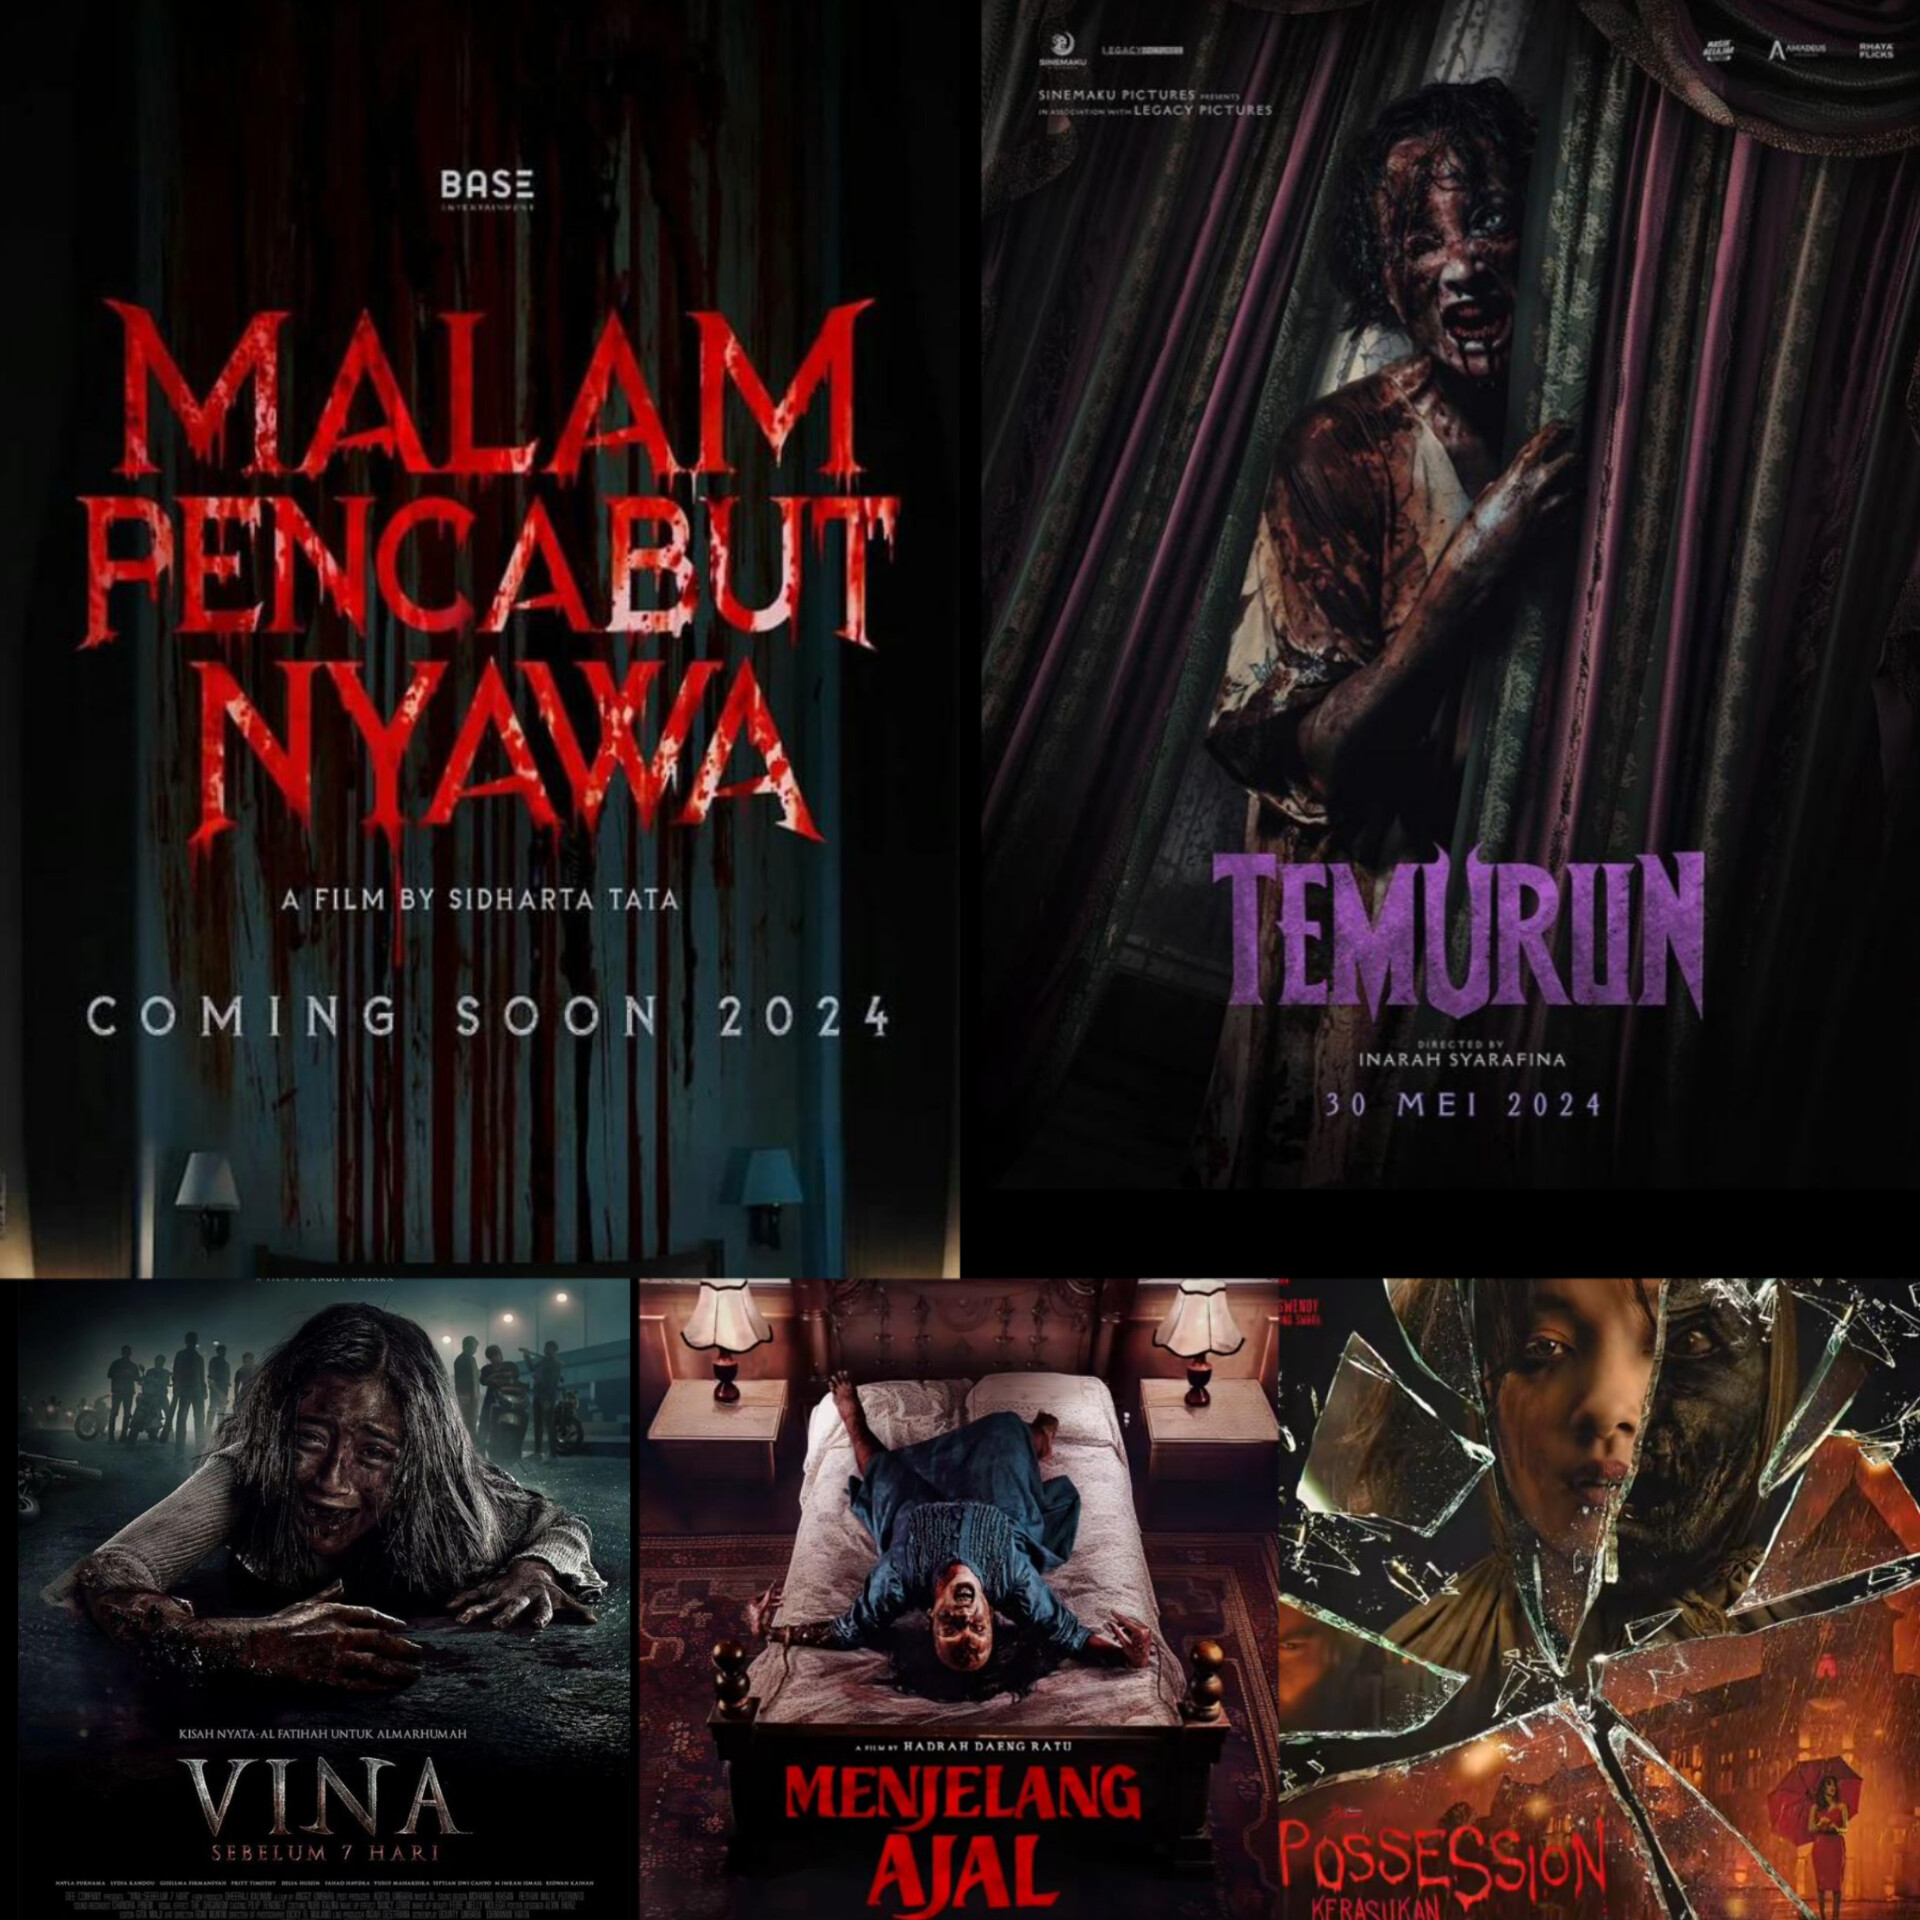 5 Film Horor yang Tayang di Bioskop Mulai Akhir April Hingga Mei 2024